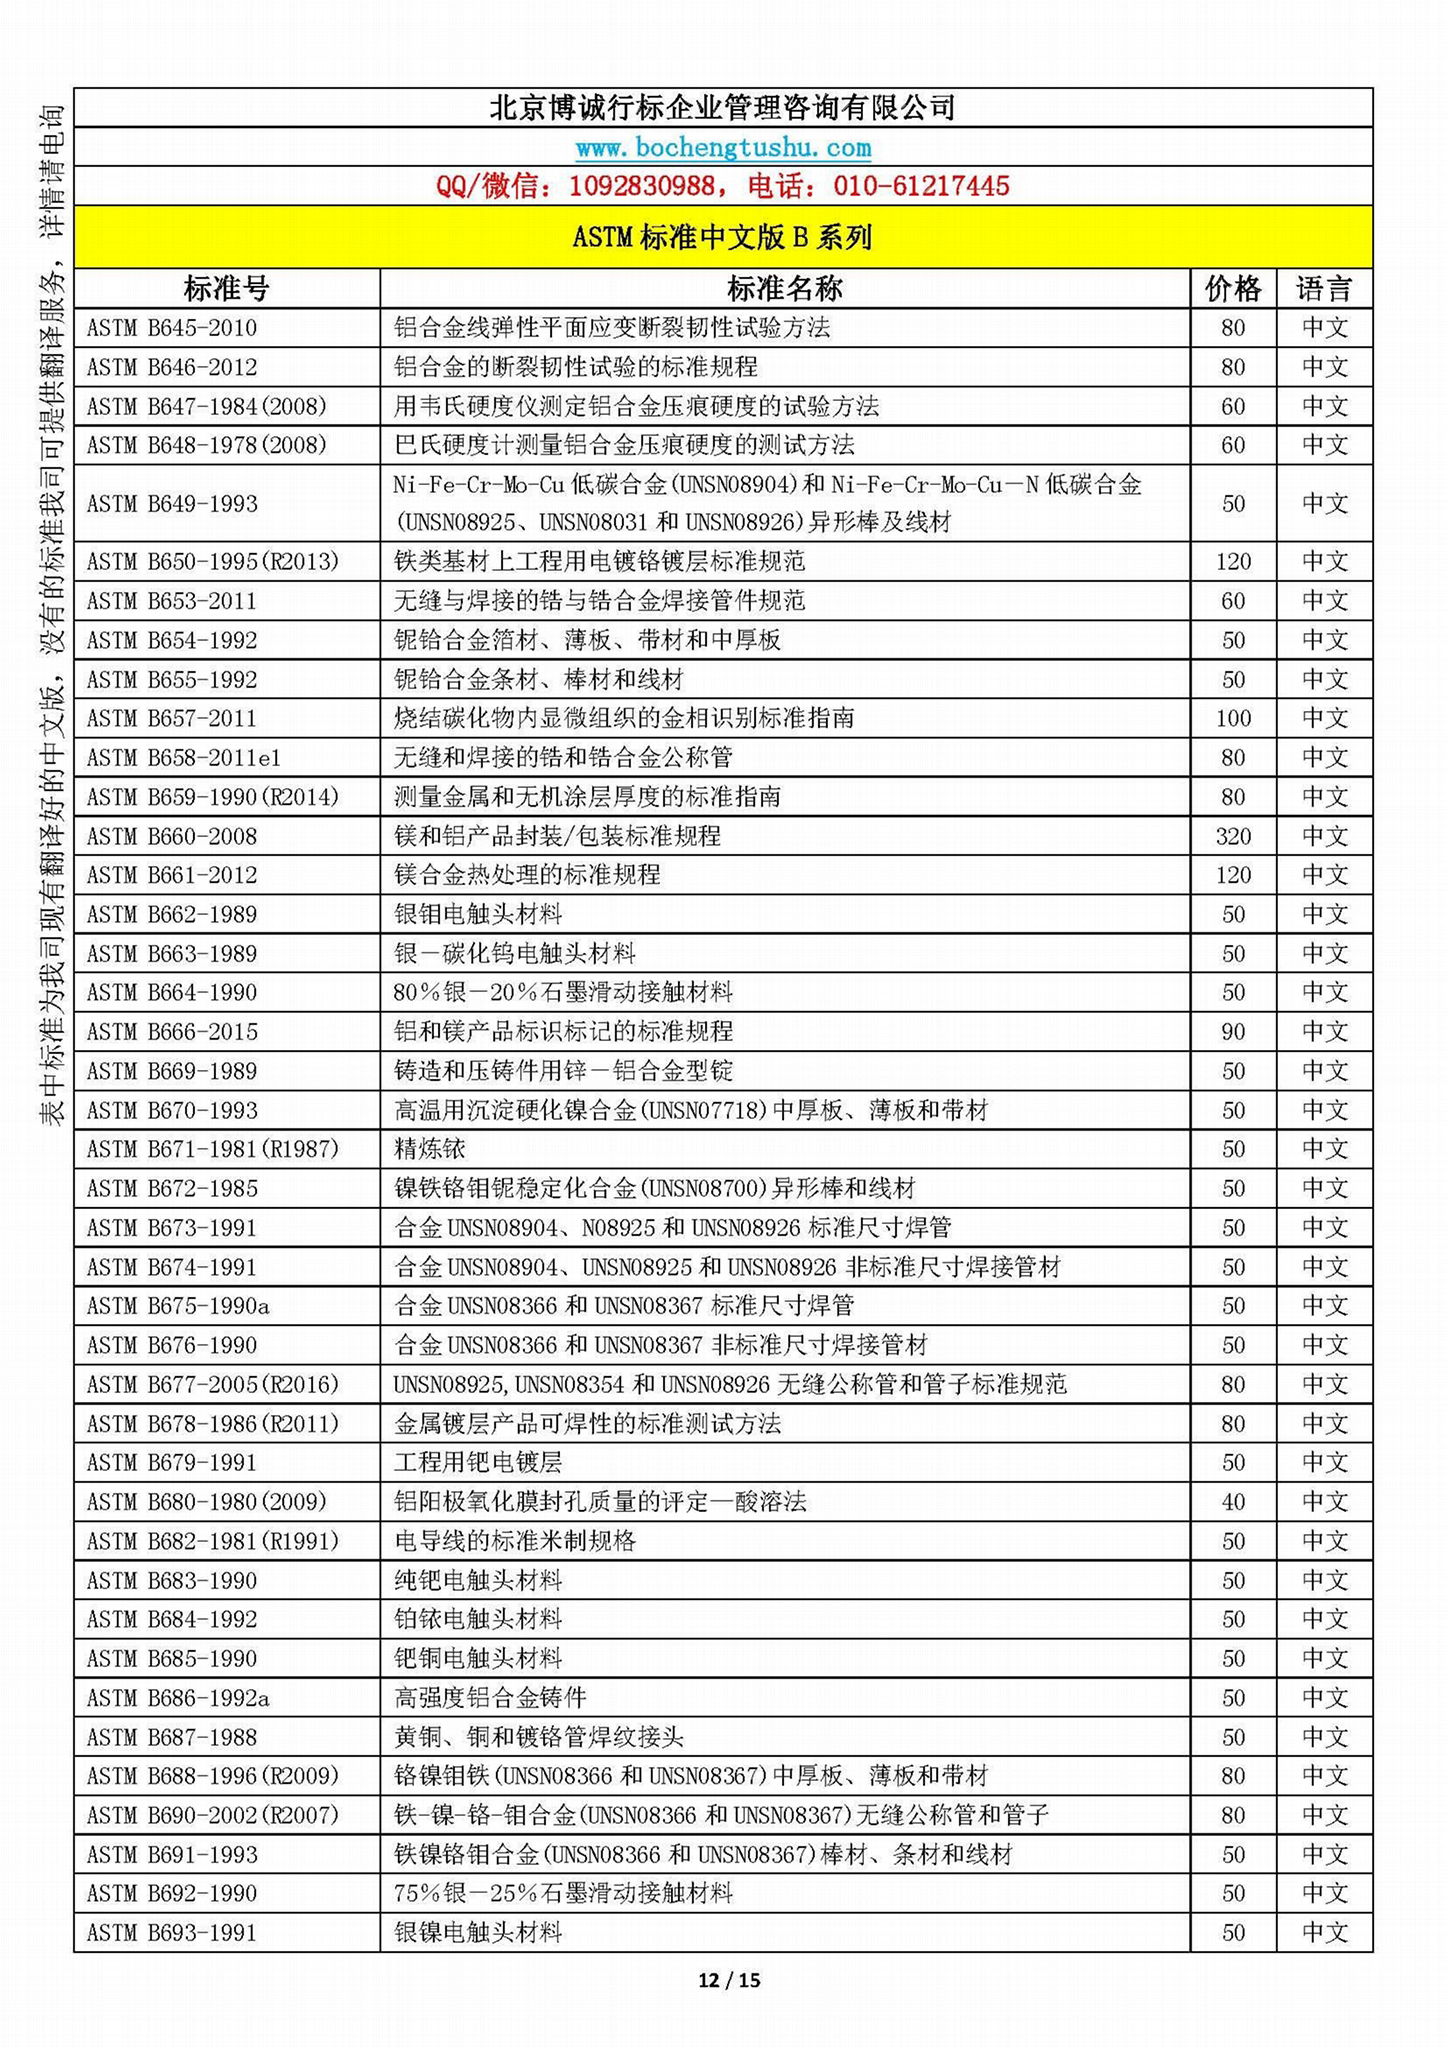 ASTM標準中文版B系列資料